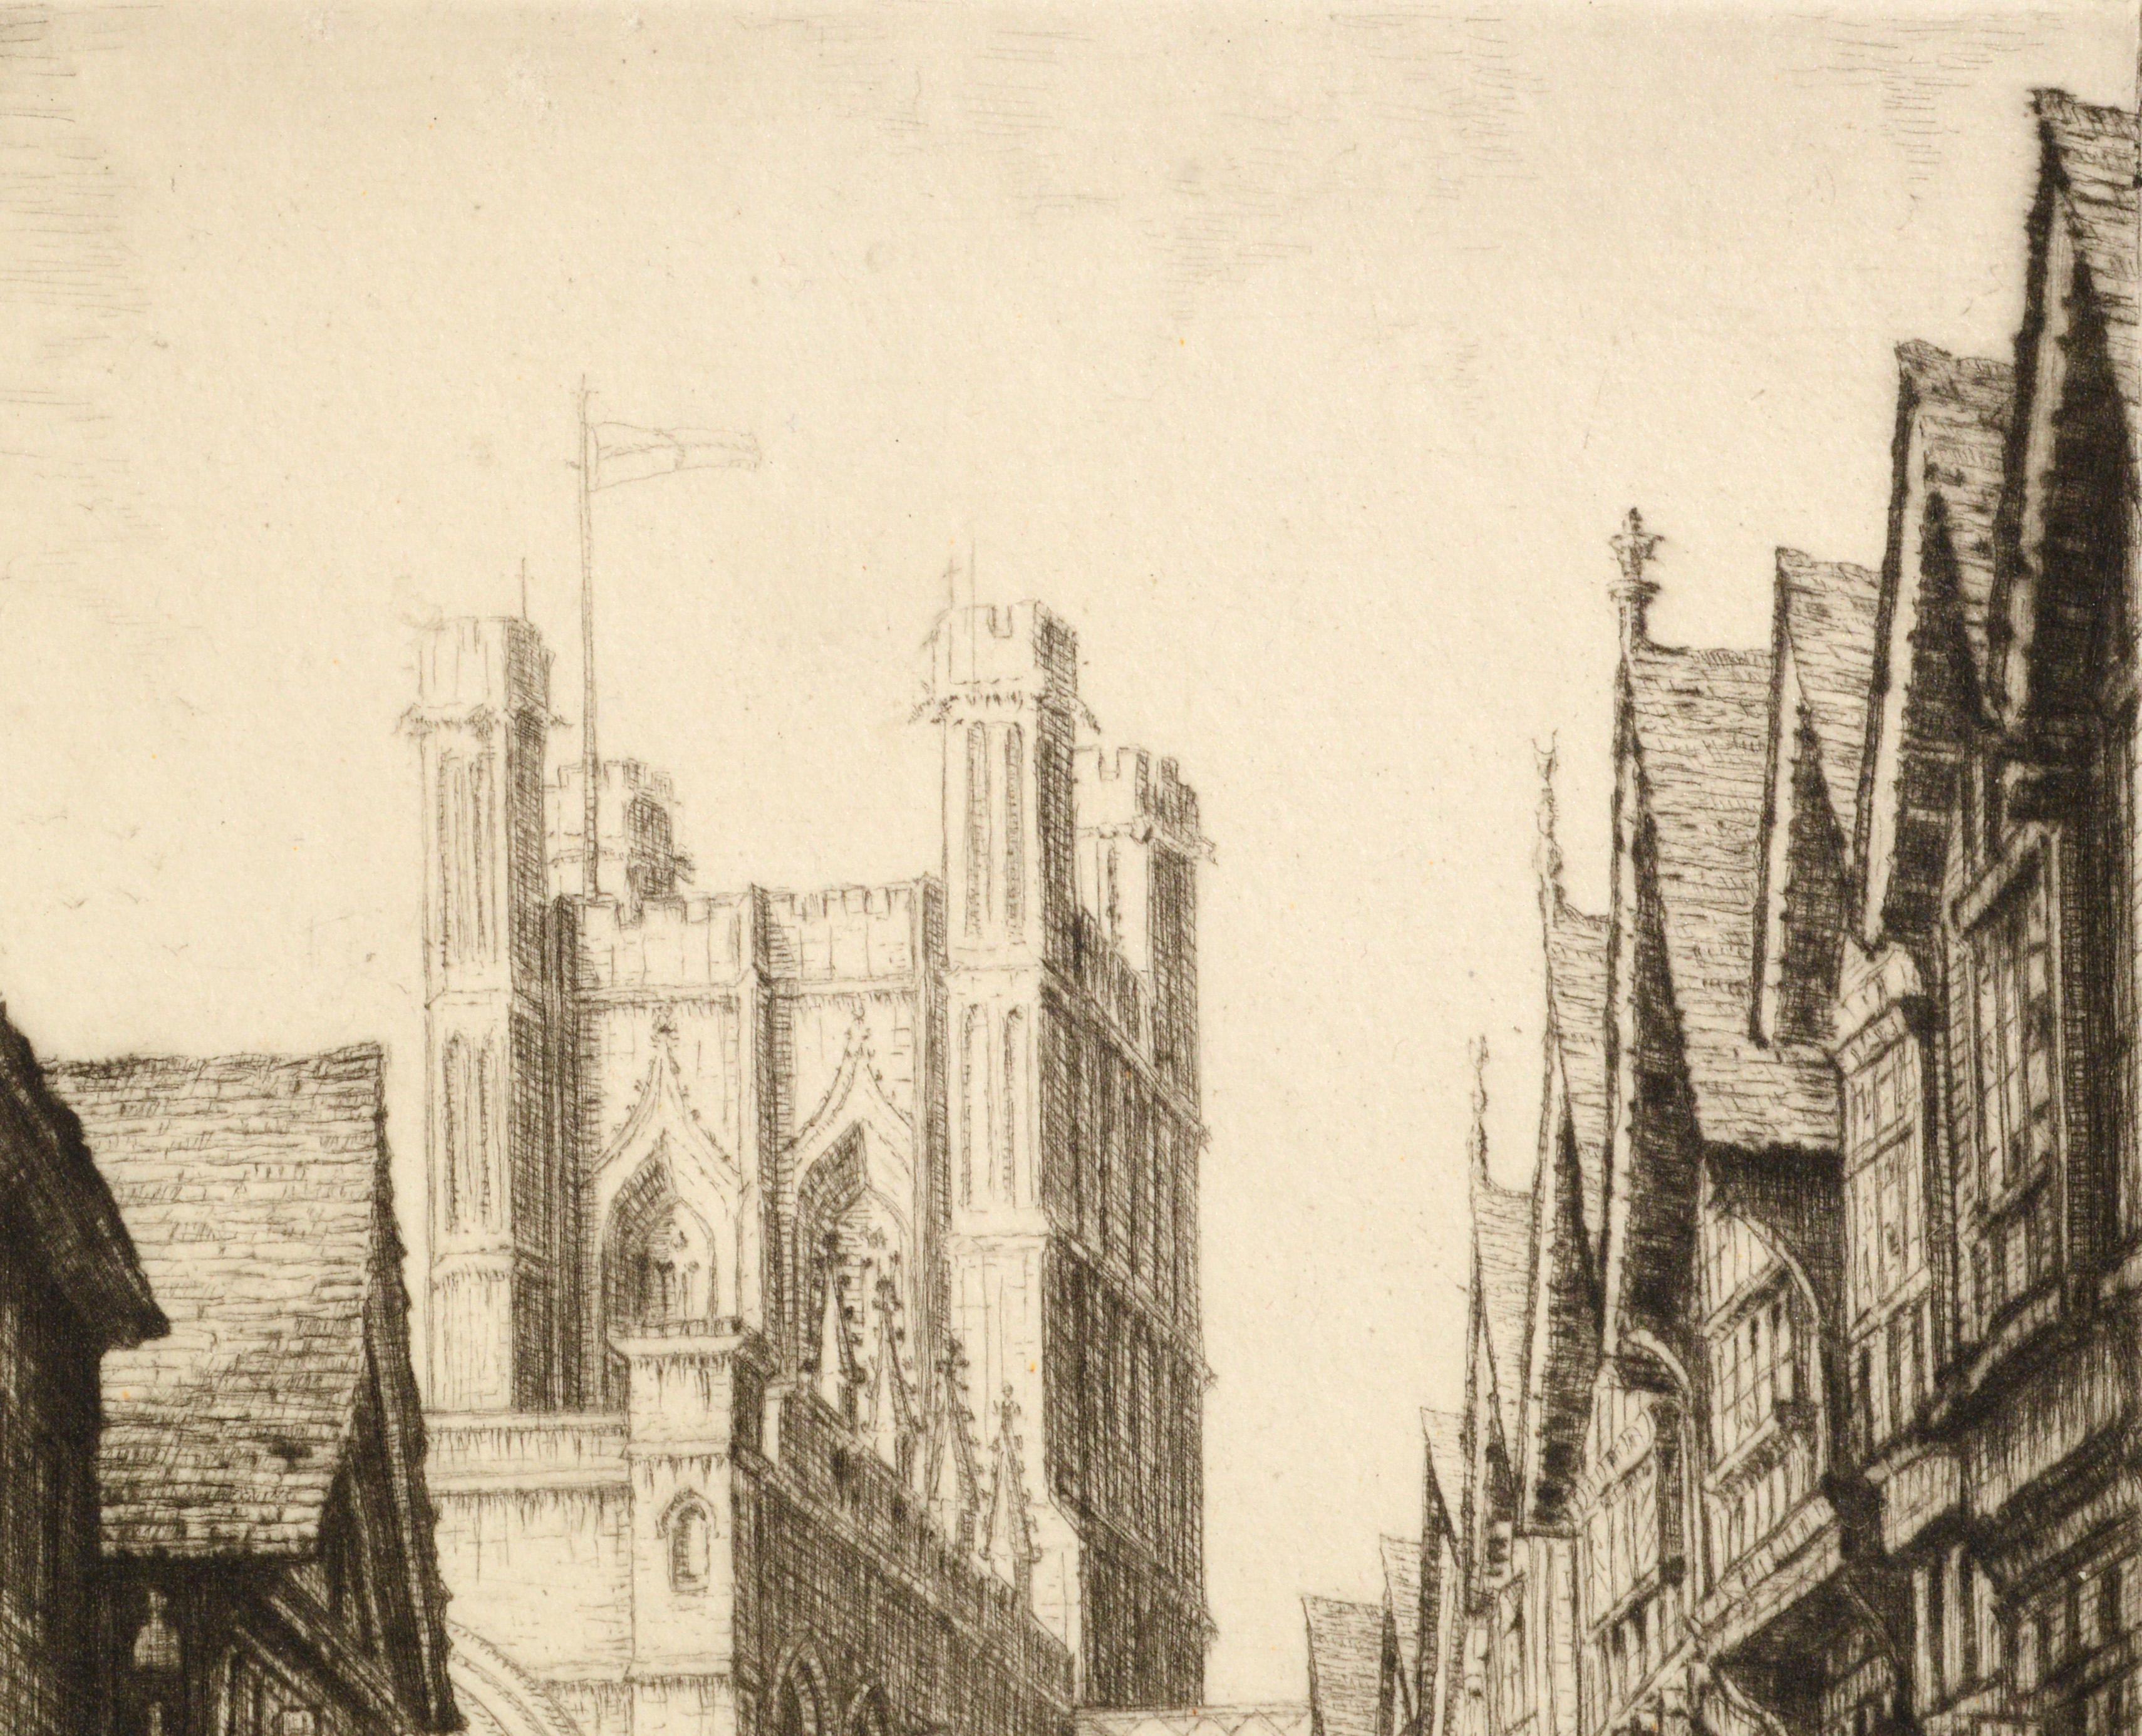 Britische Straßenszene des frühen 20. Jahrhunderts – Figurative Landschaftsradierung aus den 1920er Jahren (Impressionismus), Print, von E. Mary Shelley